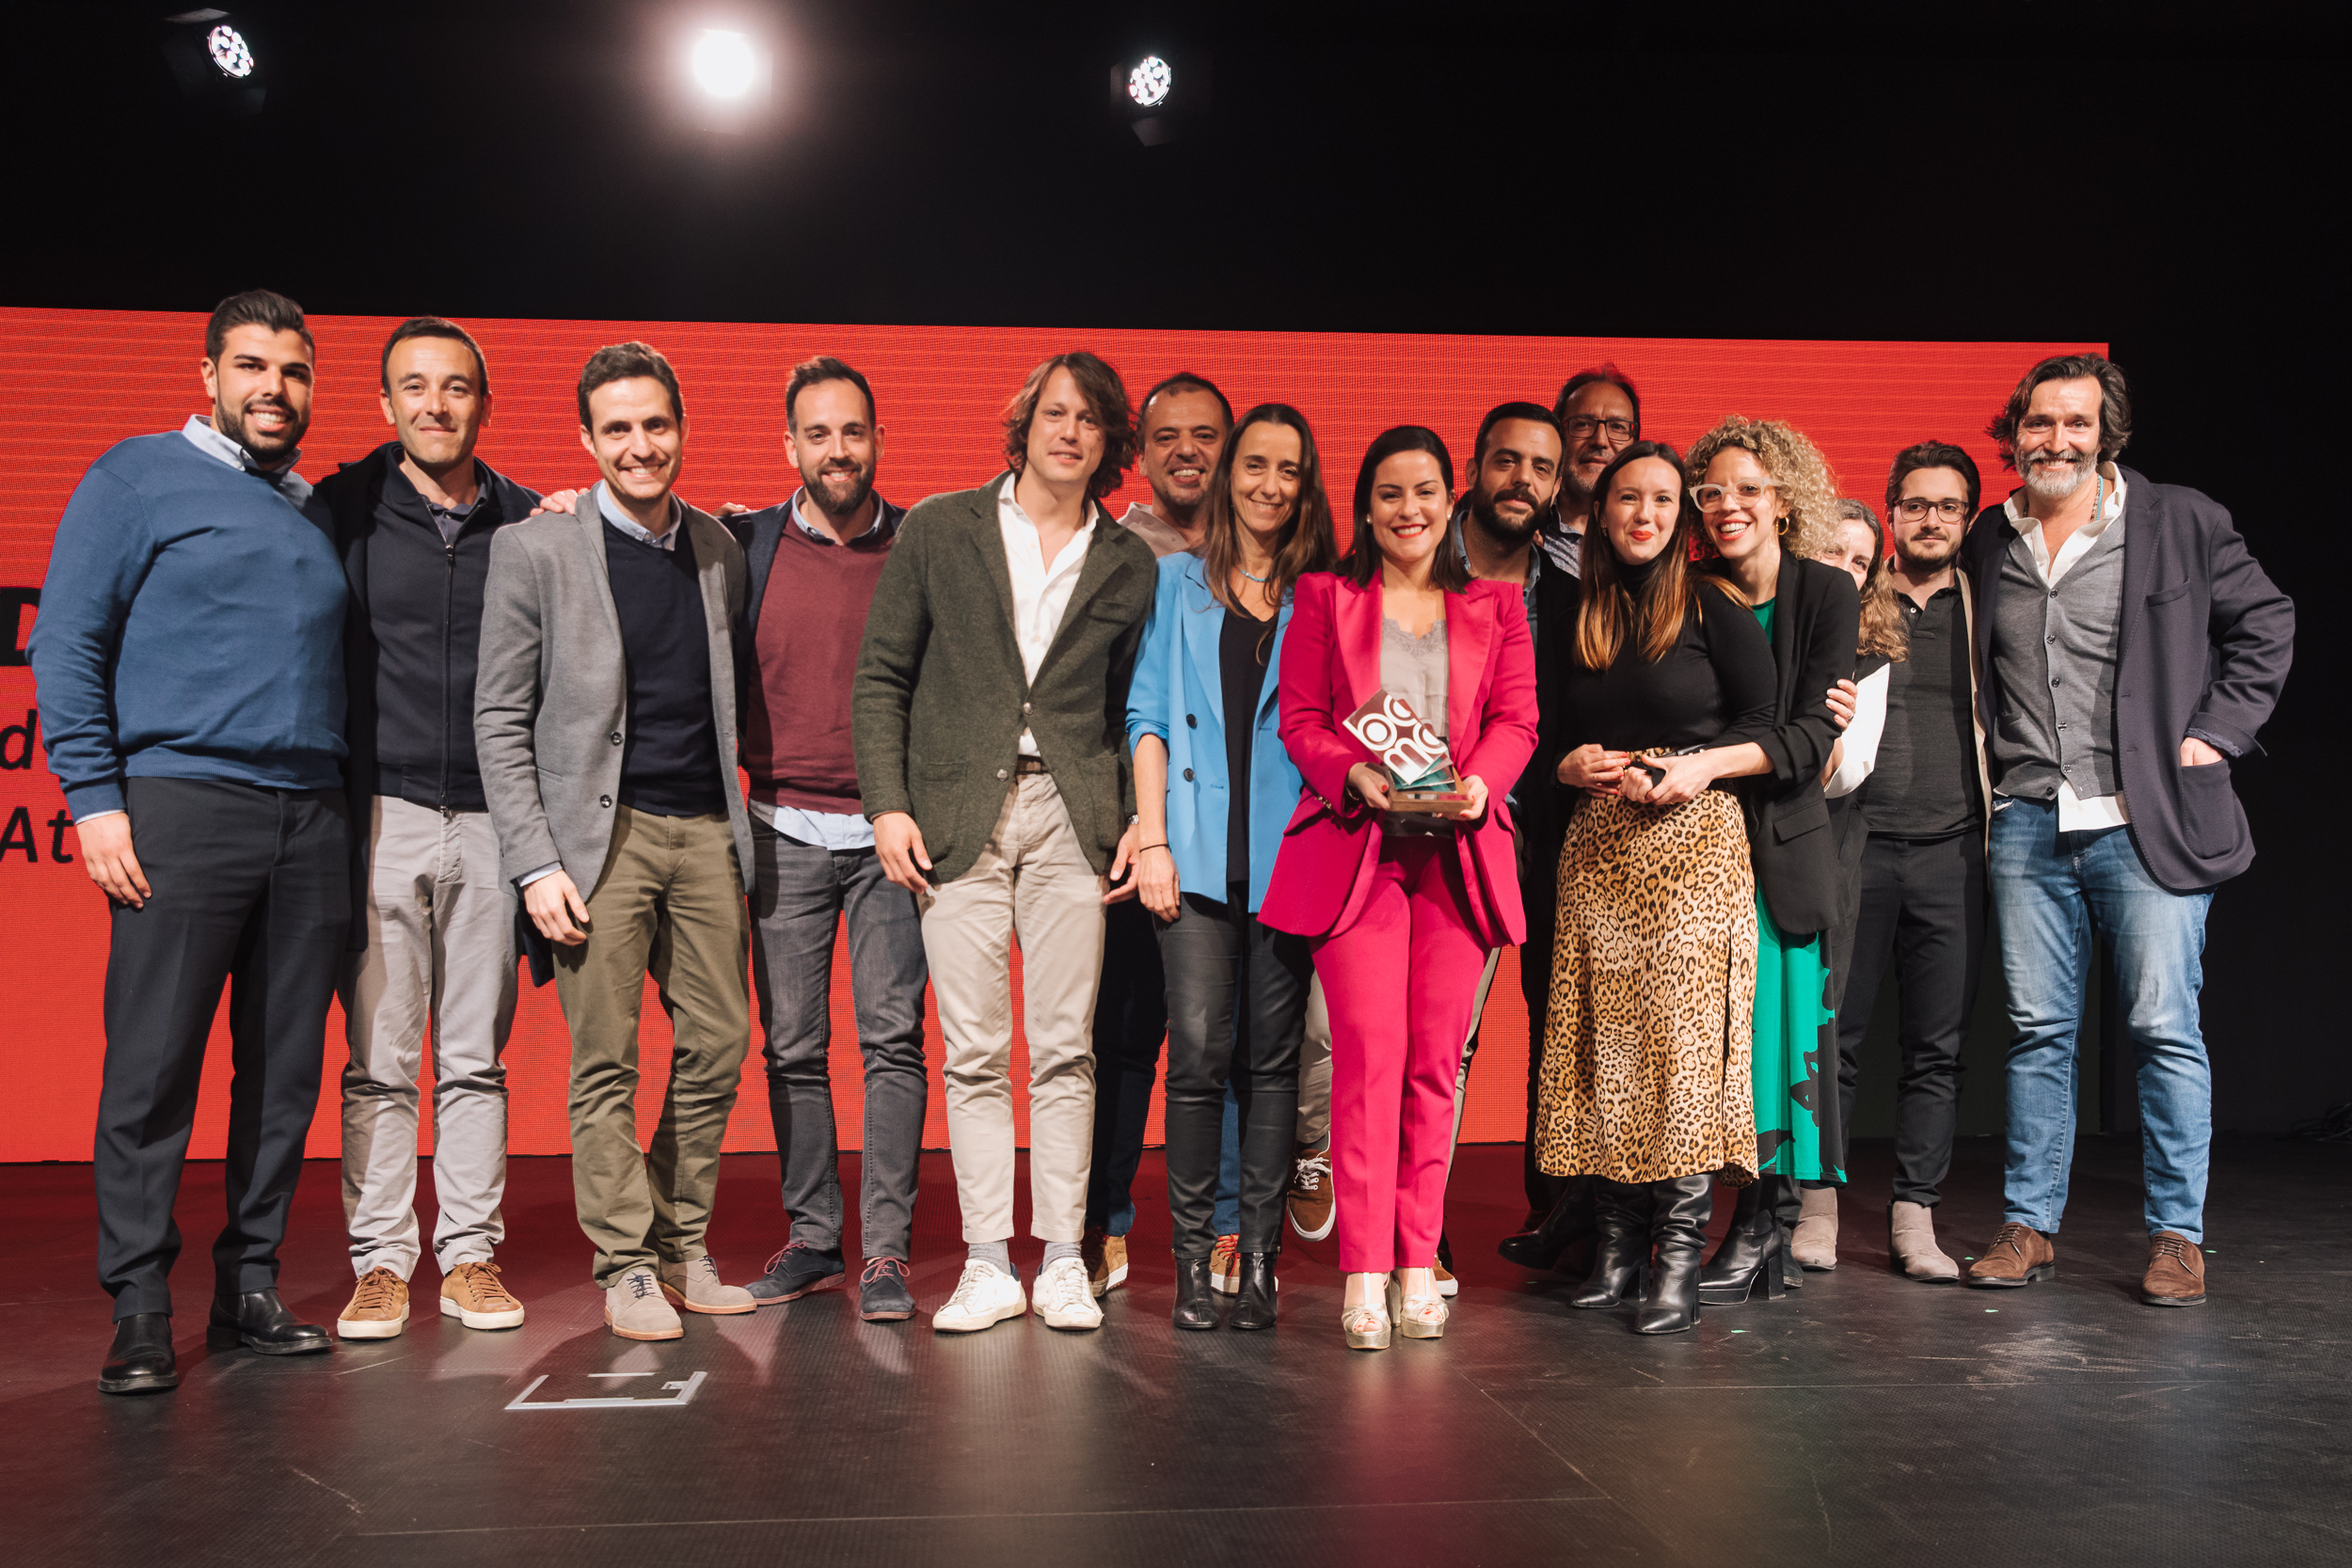 Premios BCMA al reality ‘Discovering Canary Islands’ / CanariasNoticias.es 